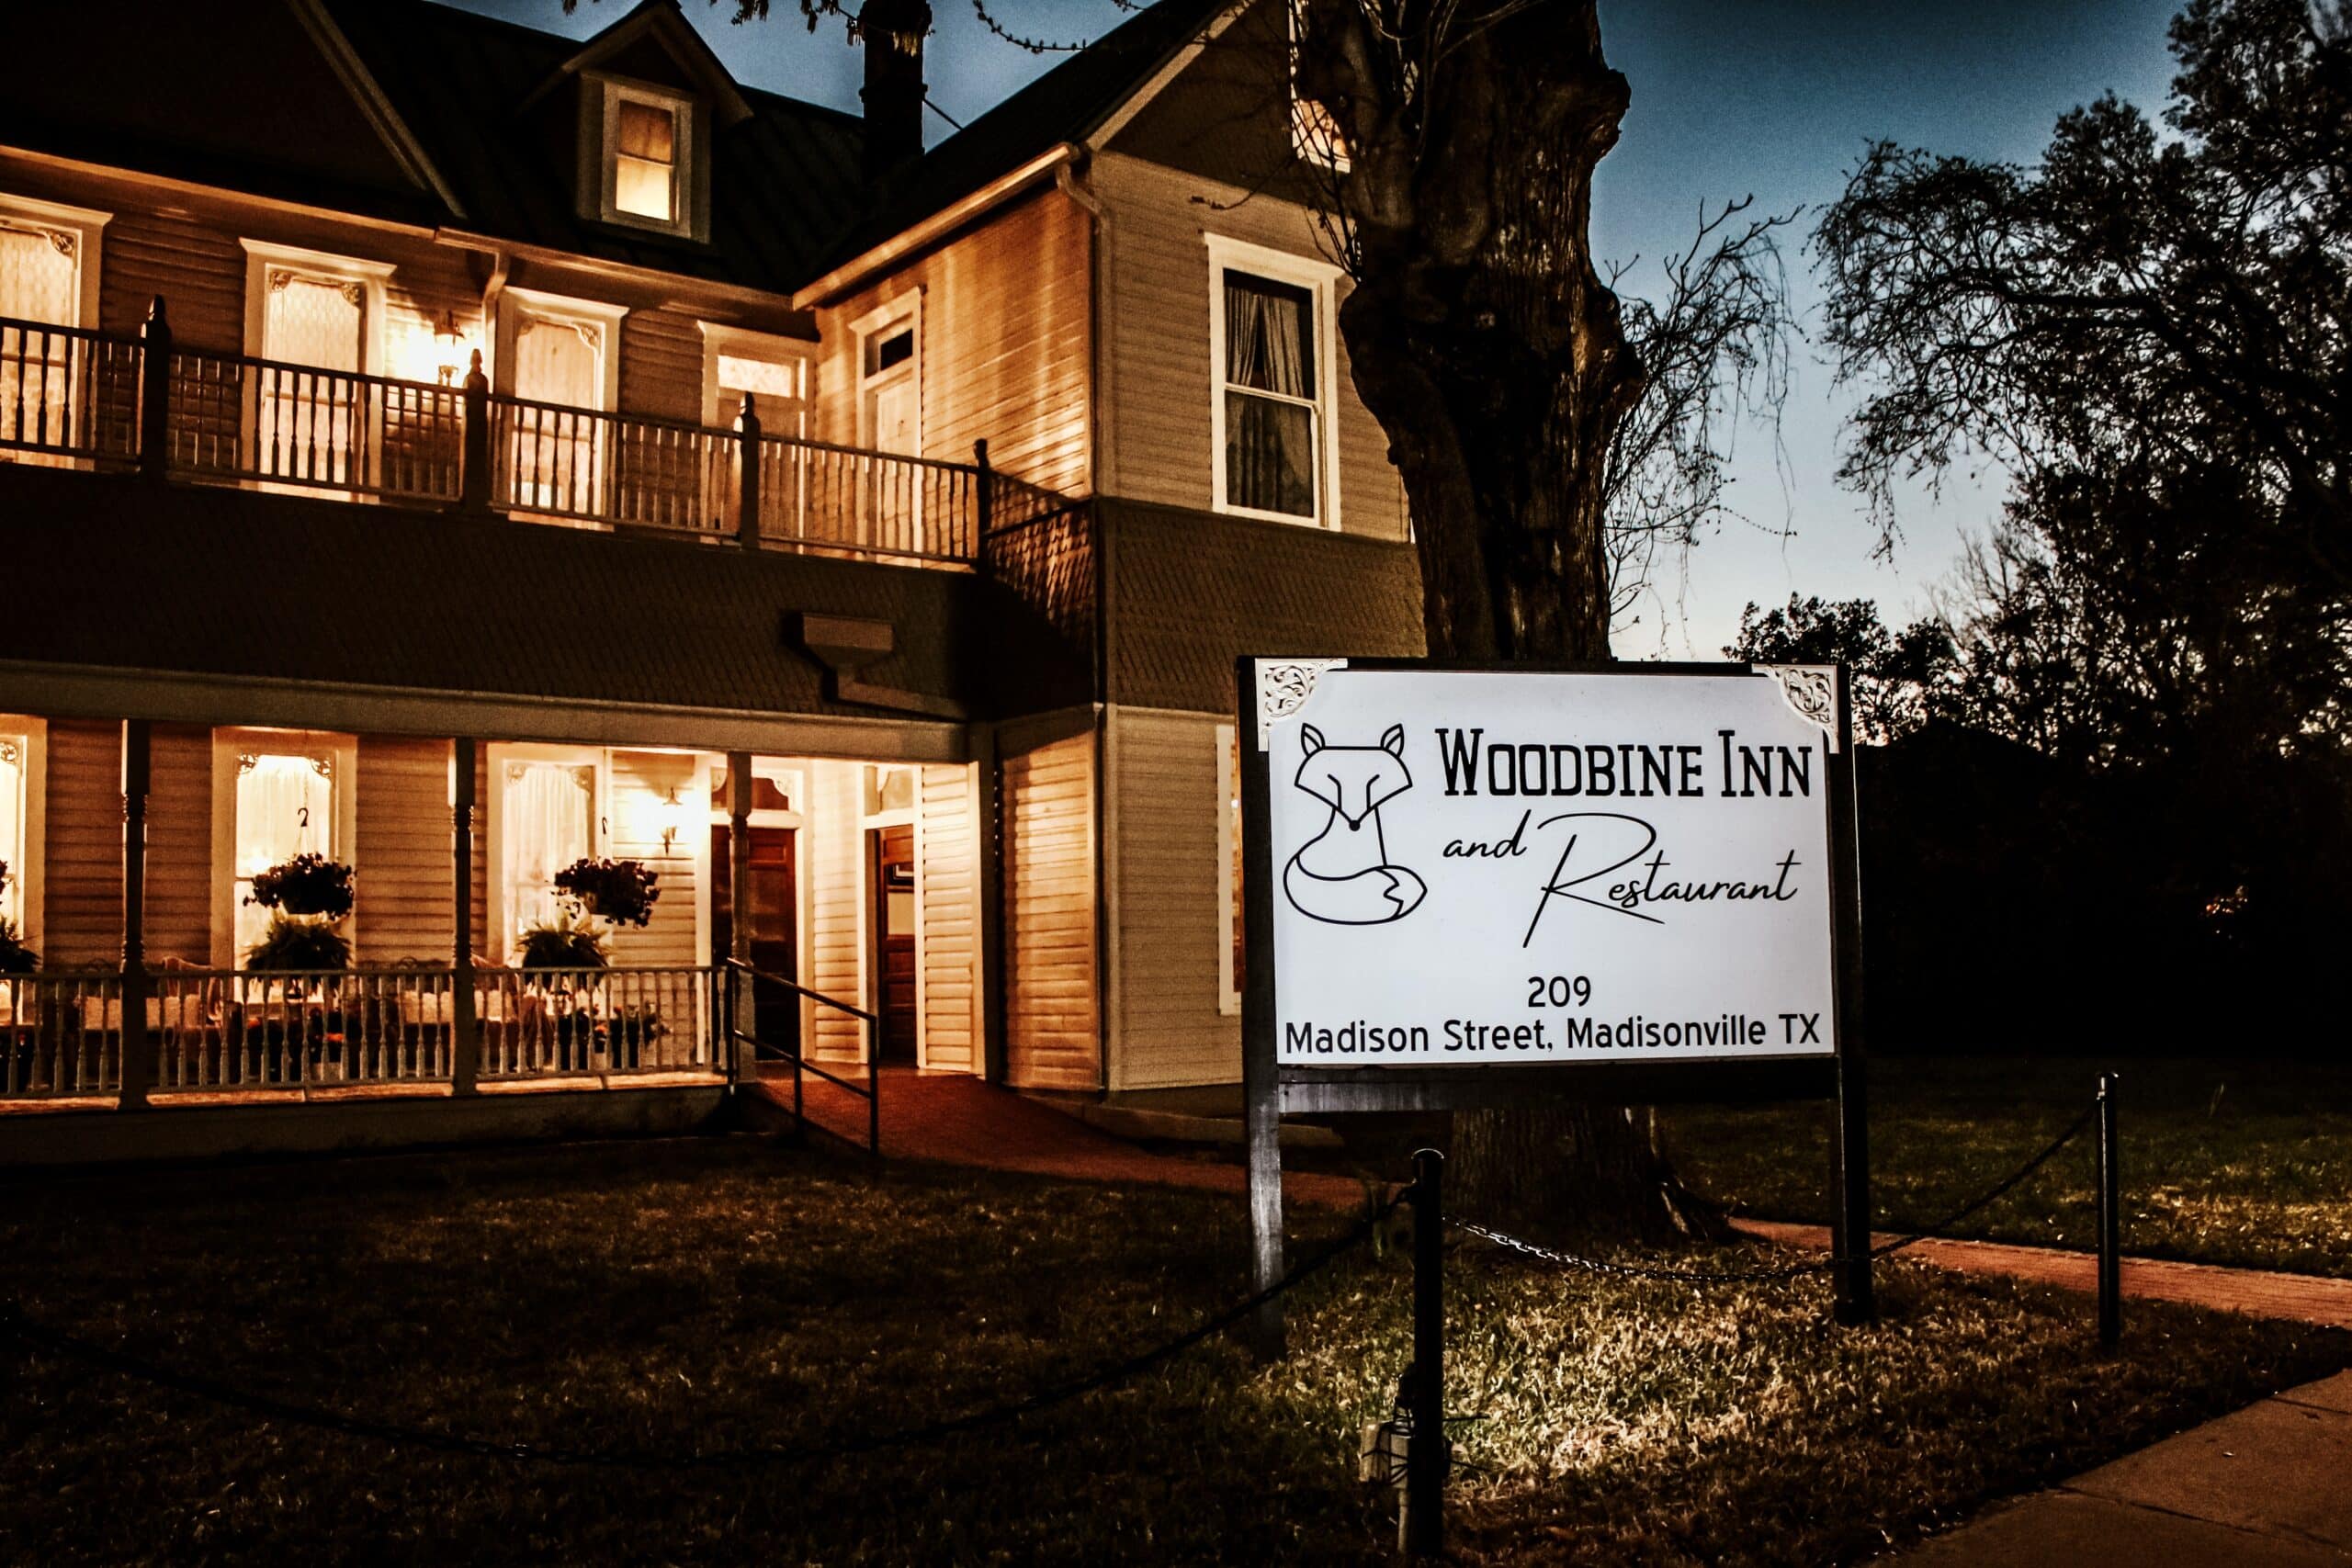 Woodbine Inn and Restaurant